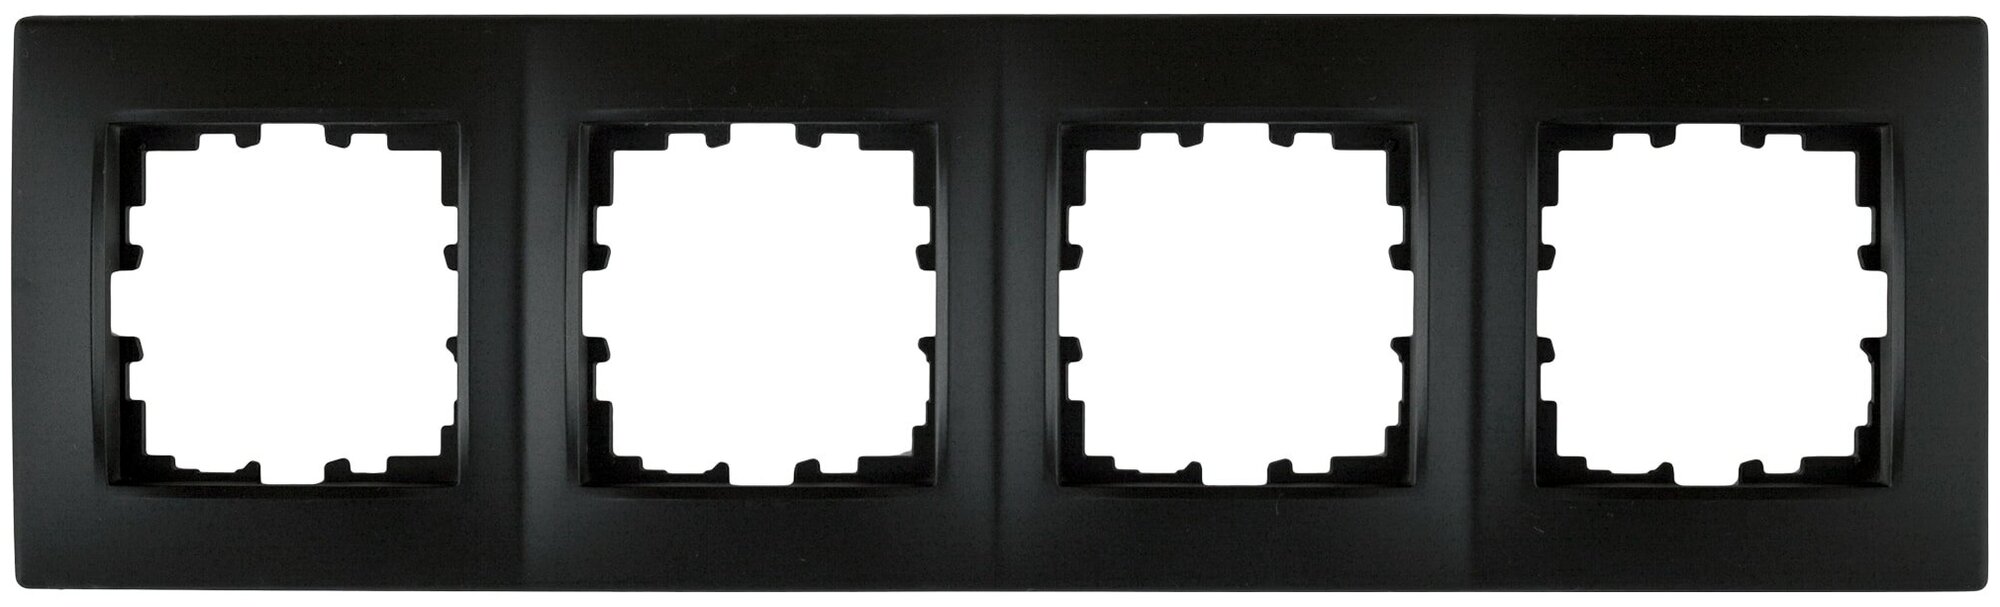 Рамка для розеток и выключателей Lexman Виктория сферическая 4 поста цвет чёрный бархат матовый